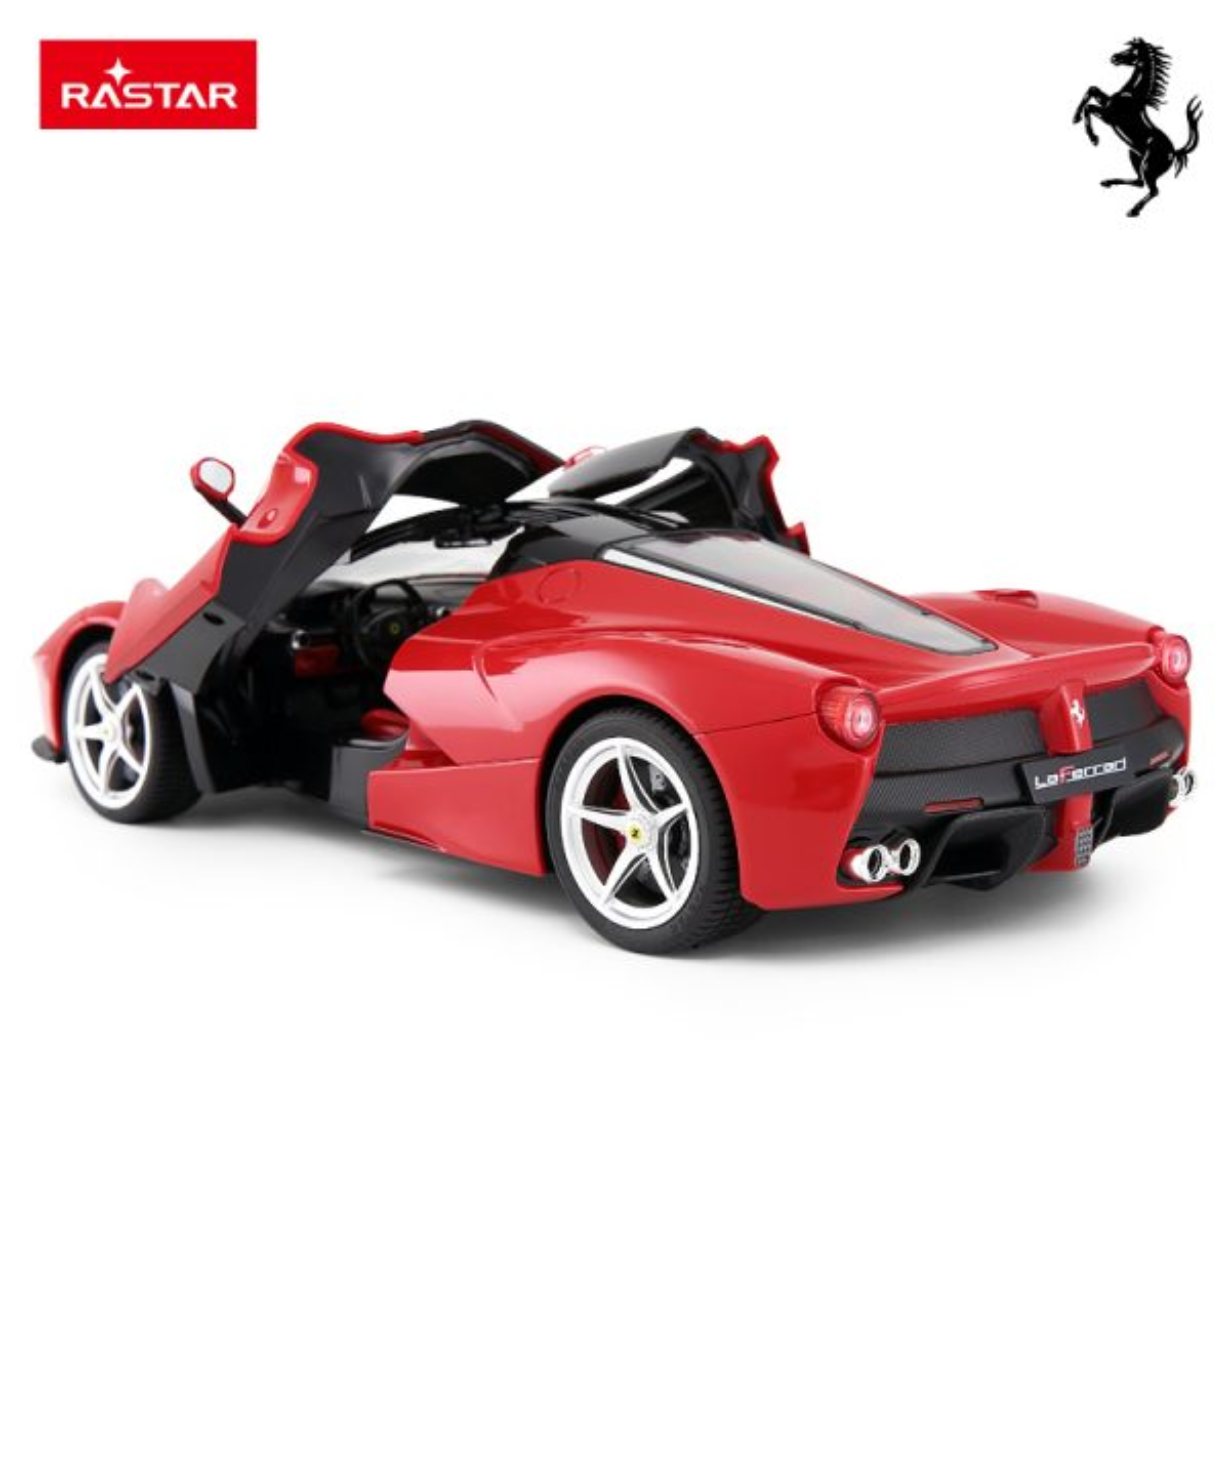 Rastar Ferrari Car r/c